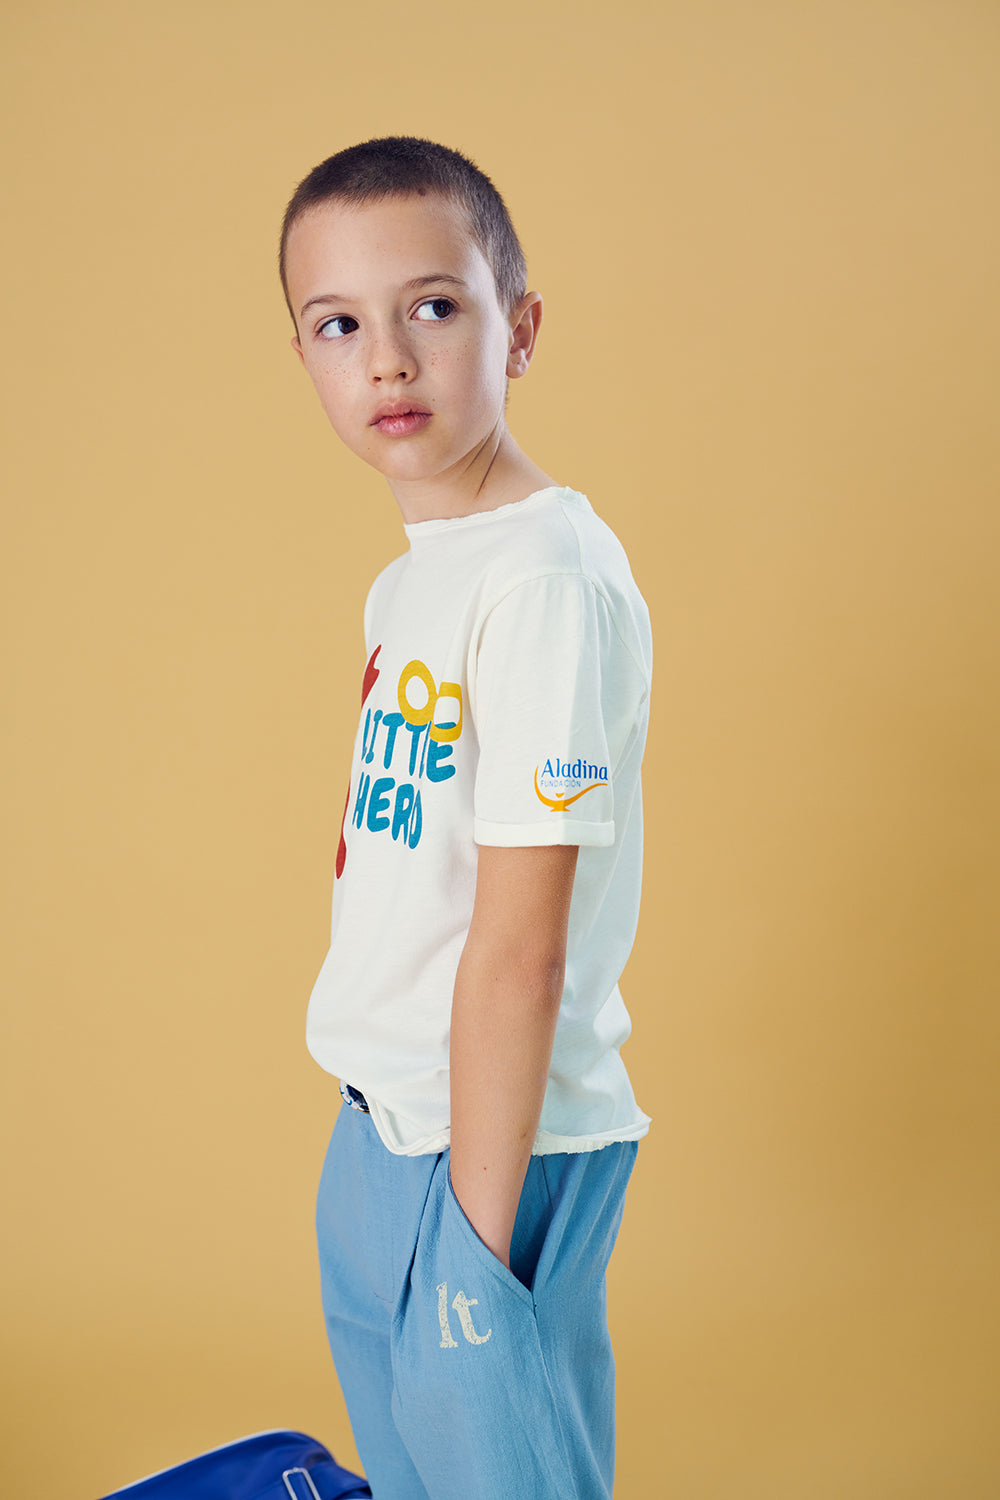 Little Hero T-shirt (colaboración con Fundación Aladina)